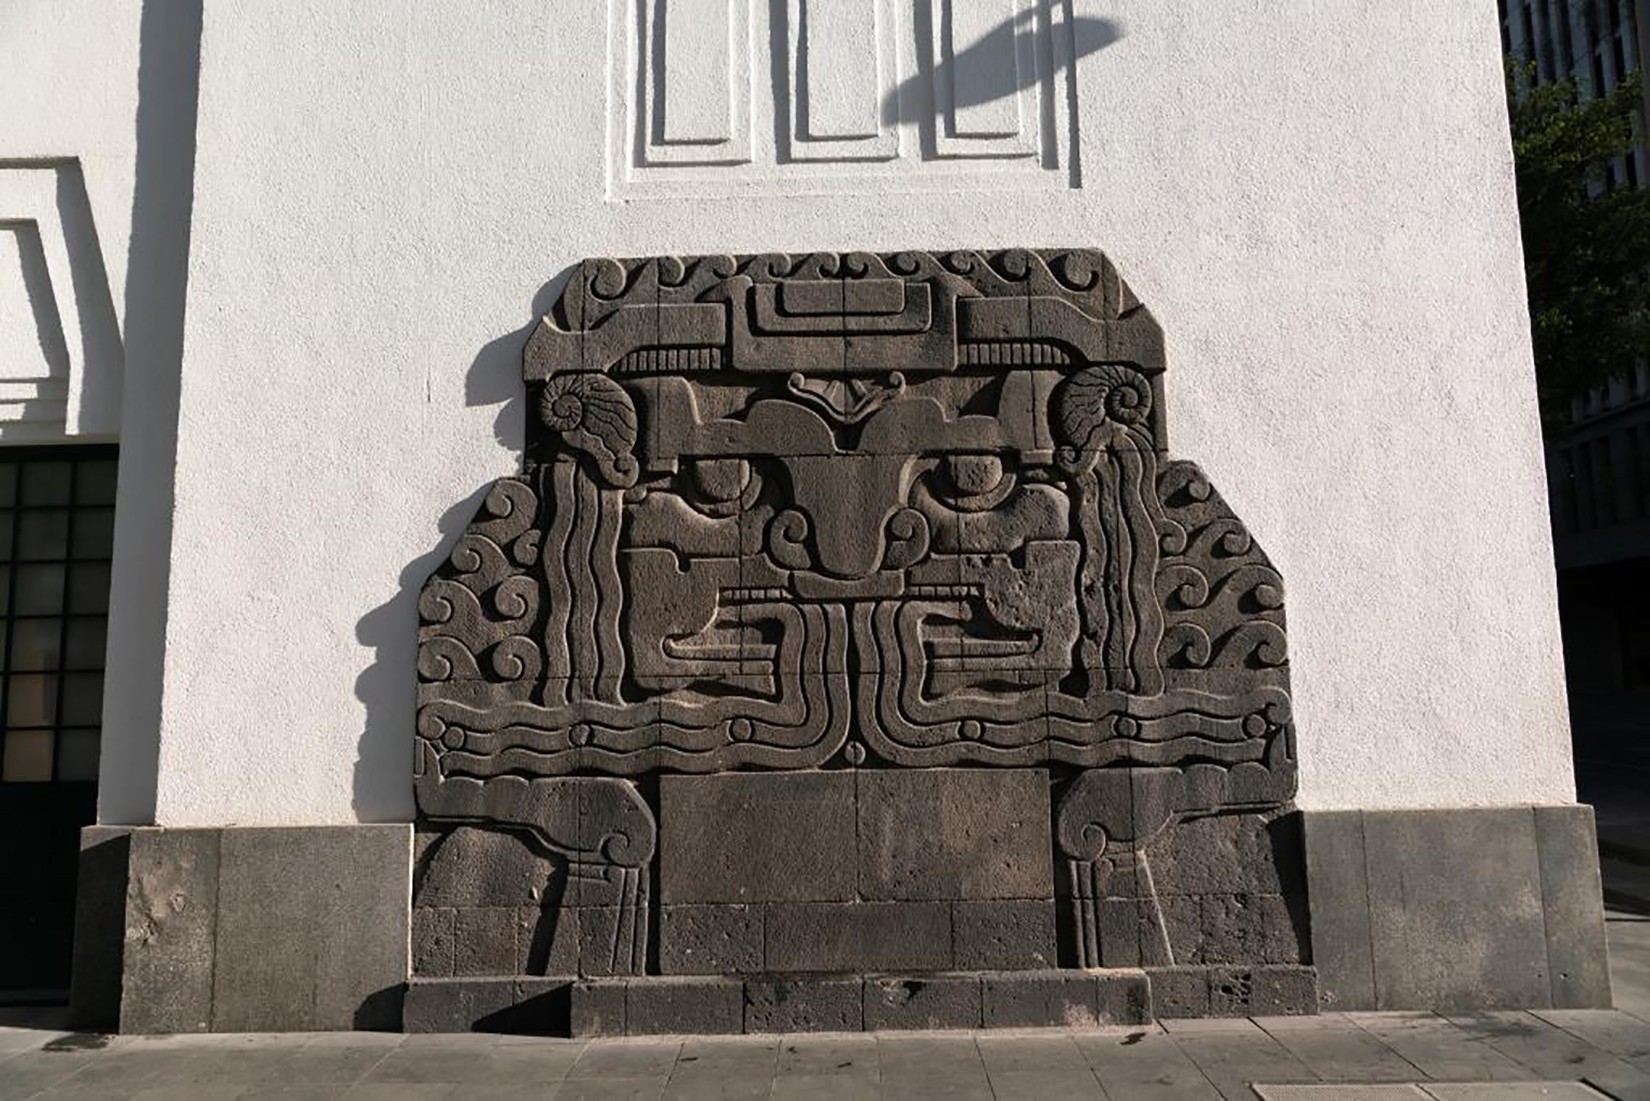 Altorelieve en piedra del dios del agua prehispánico realizado por Manuel Centurión, como símbolo del elemento utilizado por los bomberos, 1928. (Foto: EKV).